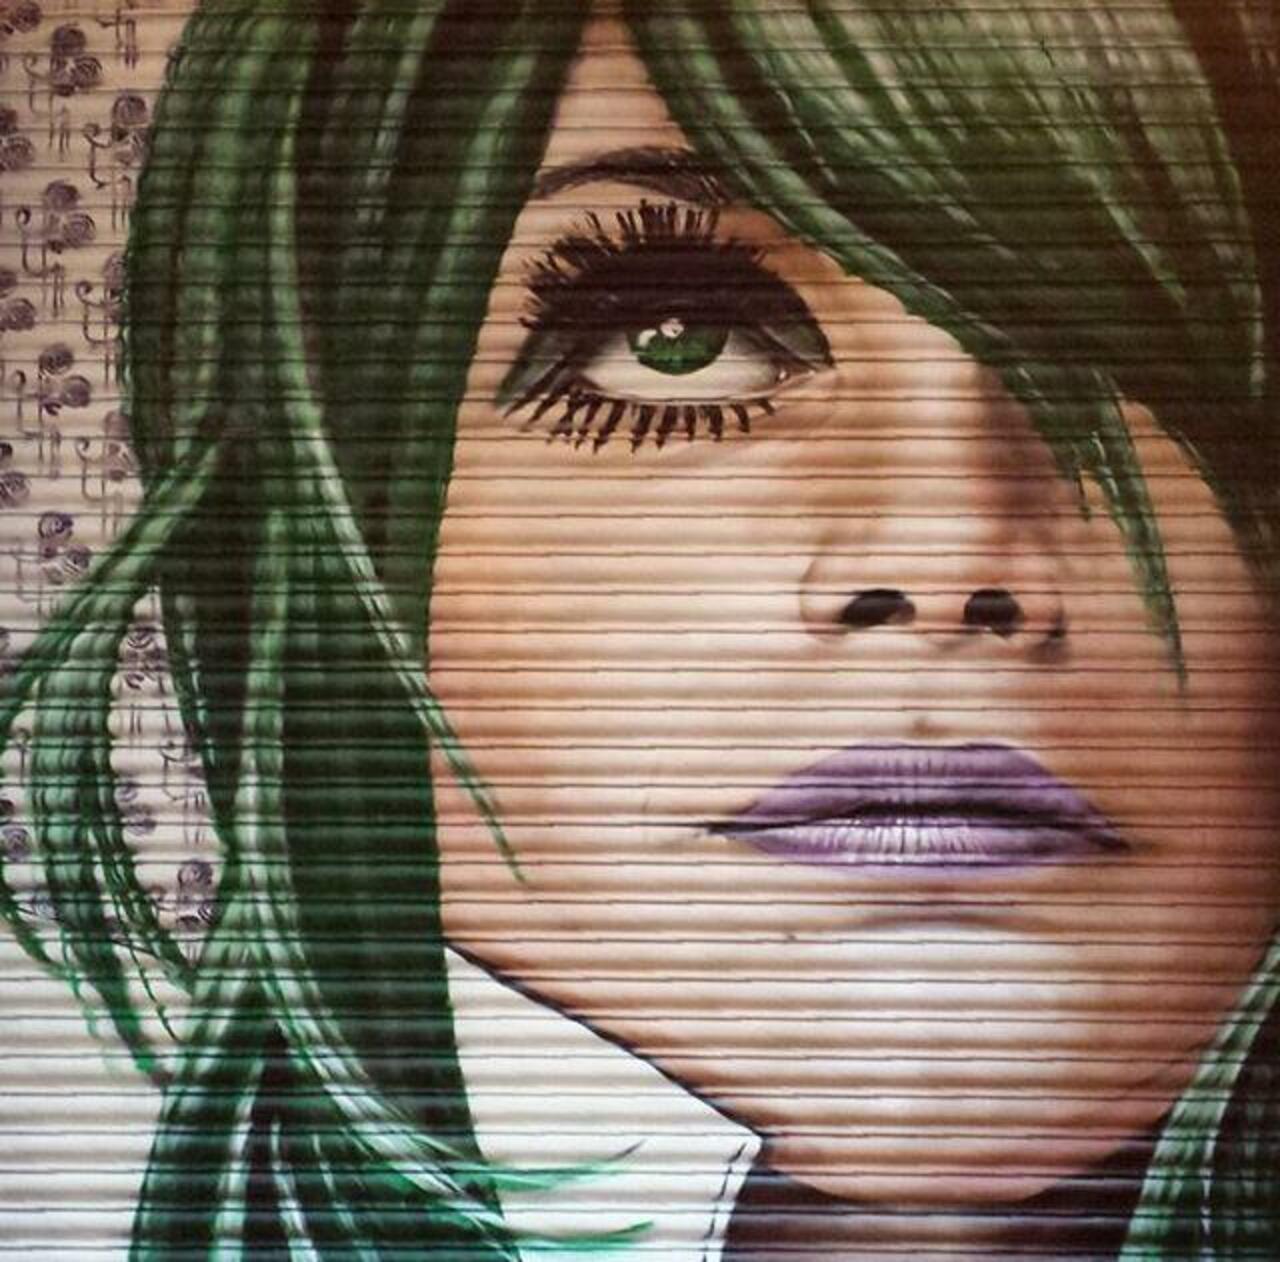 Street Art portrait on shutters by Rogue One 

#art #arte #graffiti #streetart http://t.co/gUjIF0b7iR